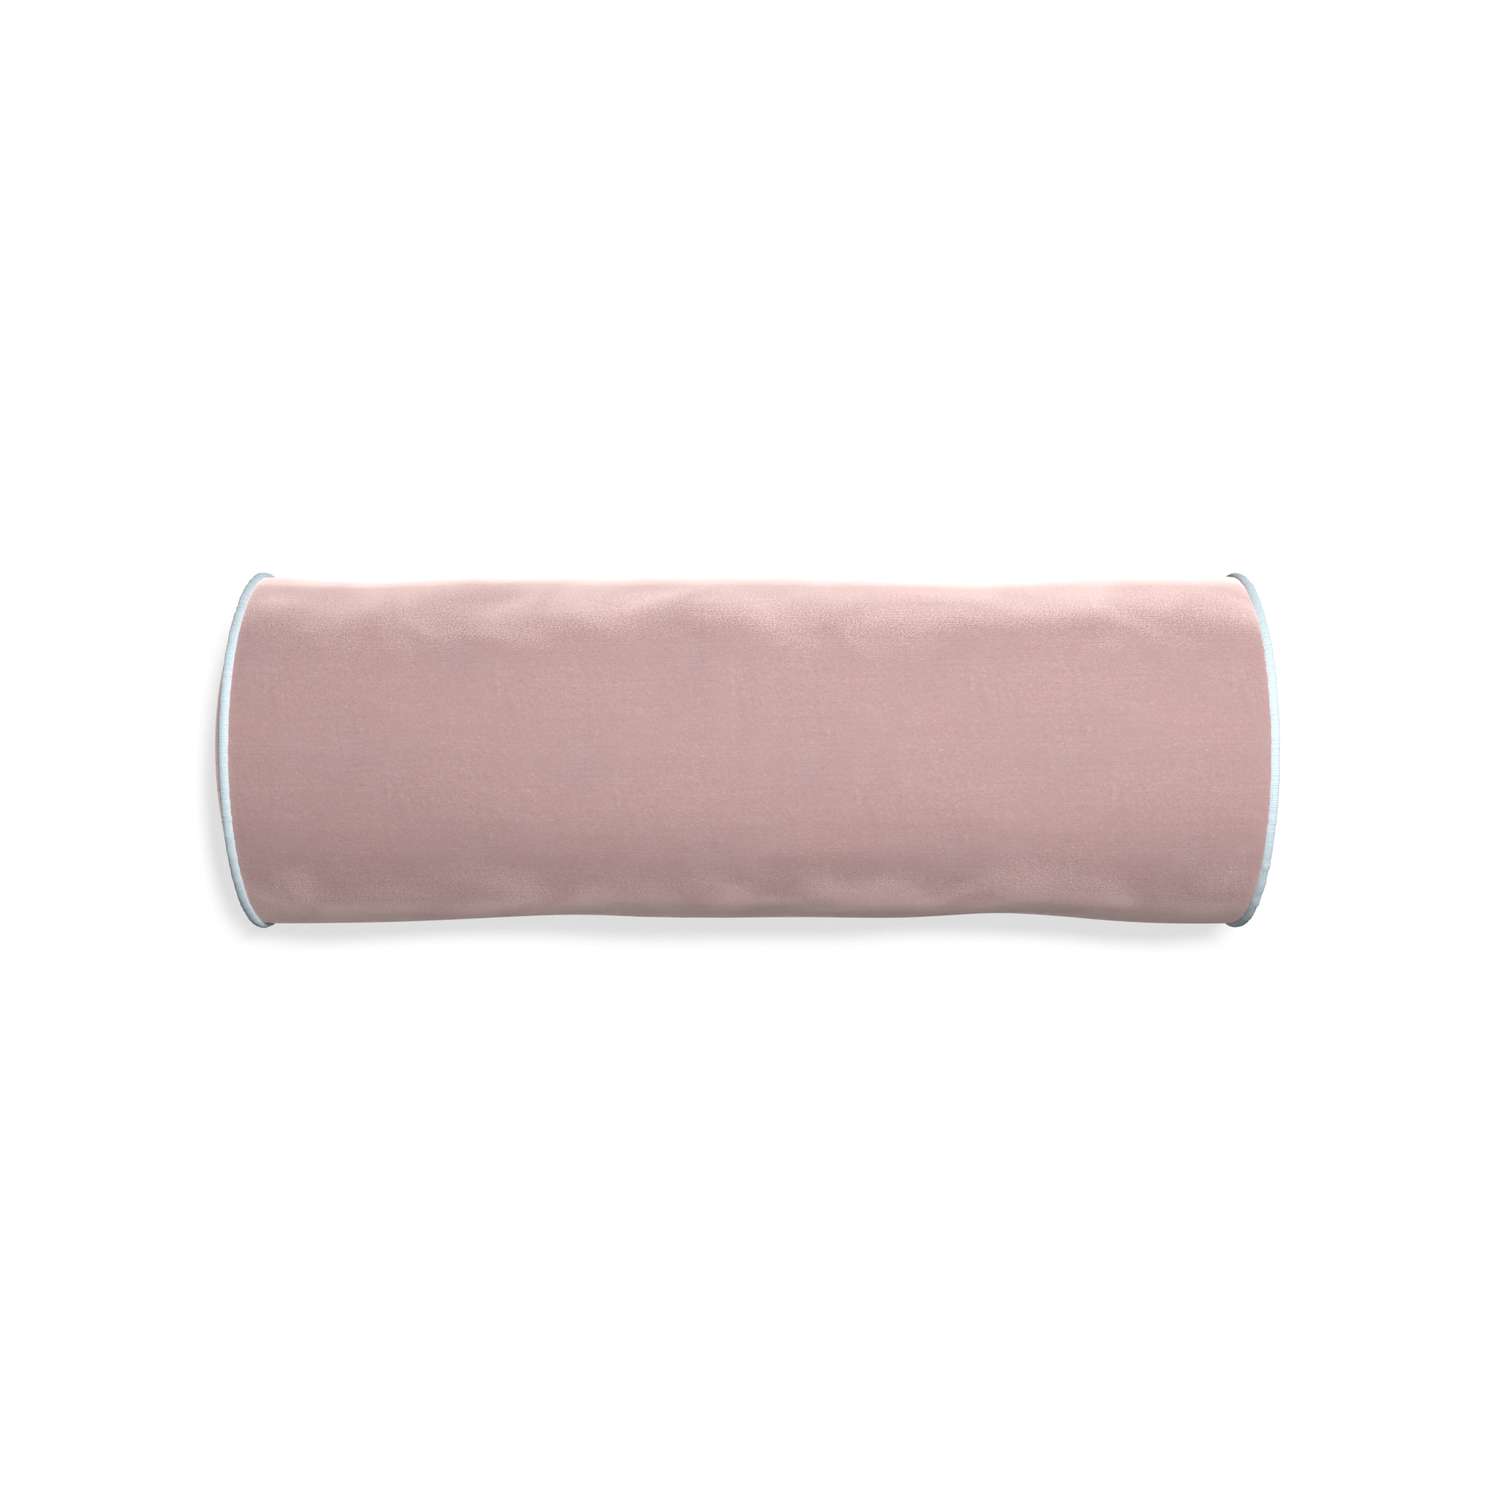 Bolster mauve velvet custom pillow with powder piping on white background